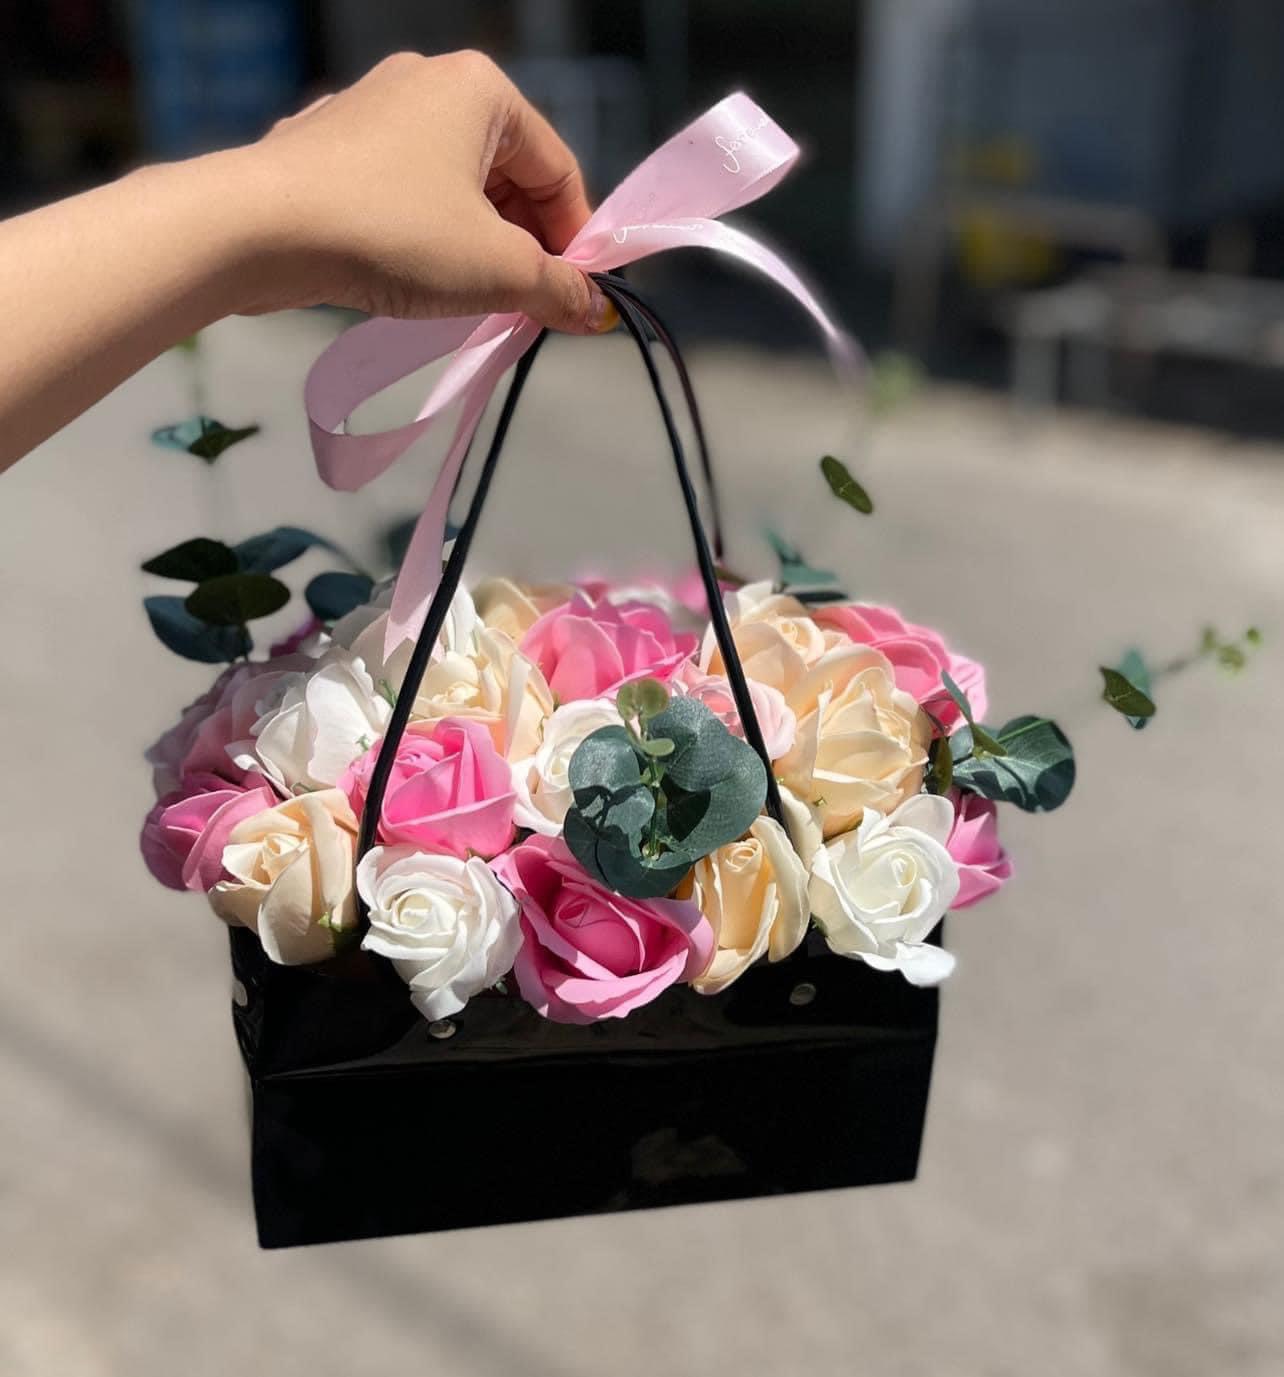 Với những người yêu thích sự độc đáo và tỉ mỉ, hoa handmade là một sự lựa chọn hoàn hảo. Những chiếc hoa được làm thủ công bởi những người thợ có tay nghề cao sẽ khiến bạn cảm thấy thích thú và vô cùng hài lòng.